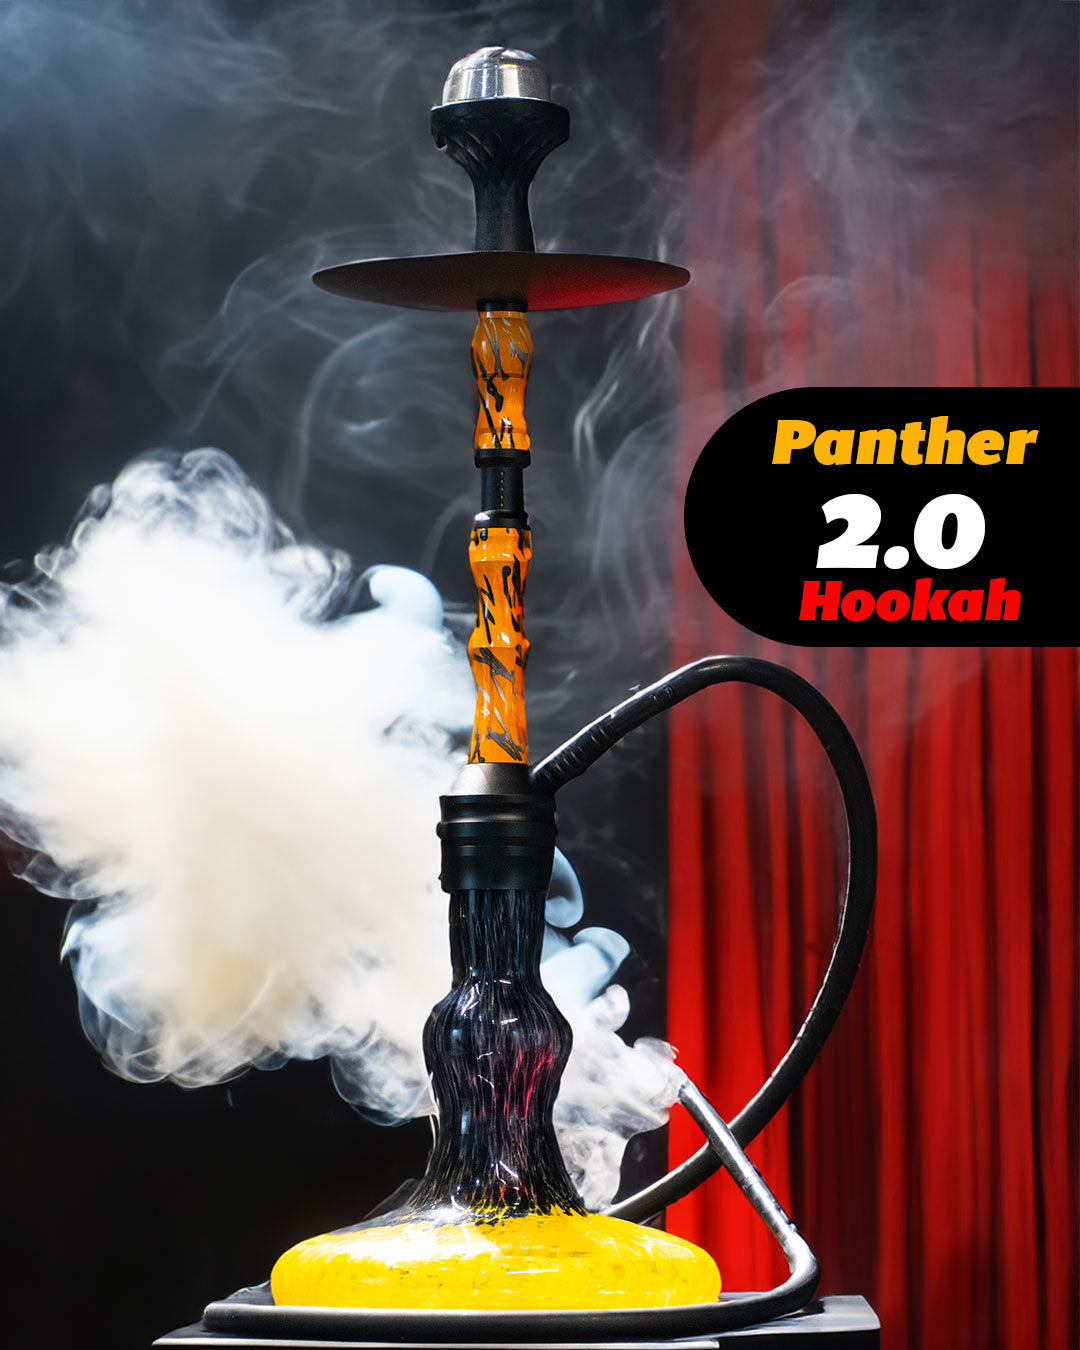 Panther 2.0 Hookah - Black